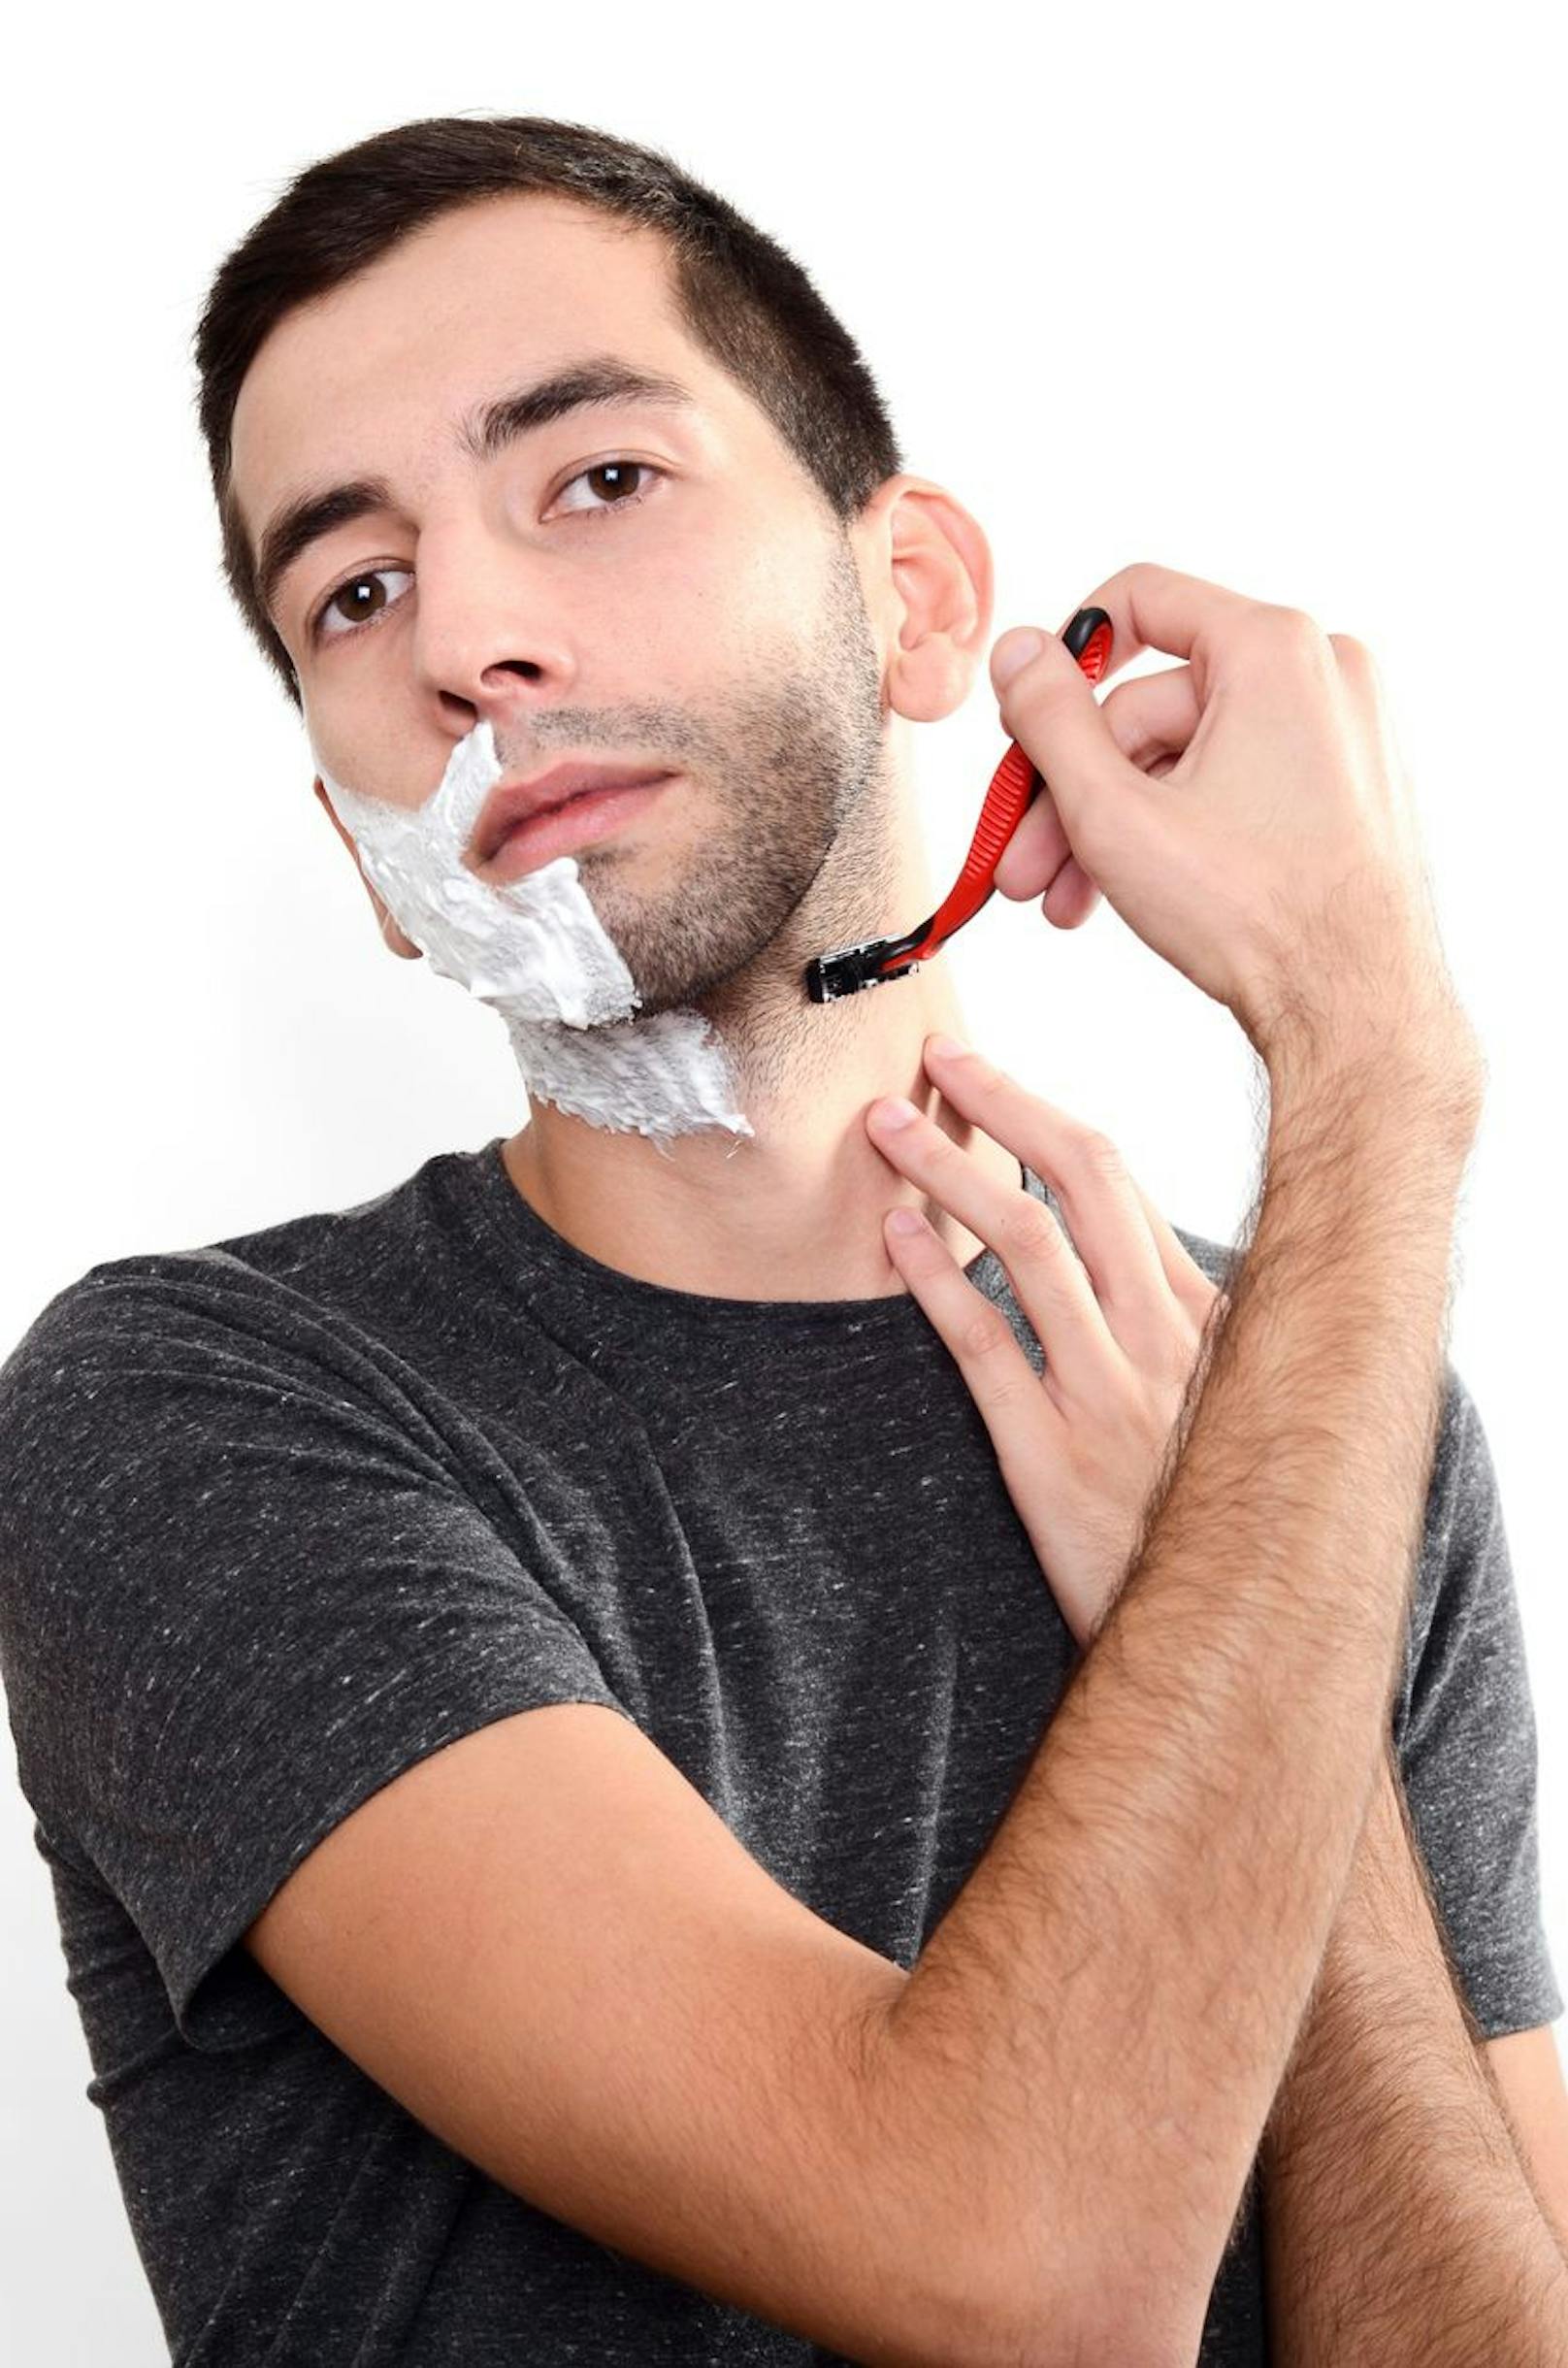 Vermeide das Rasieren für eine Weile. Mit dem Rasierer reizt du deine Haut nämlich nur noch mehr. Kürze deine Barthaare am besten mit einer sauberen Bartschere.